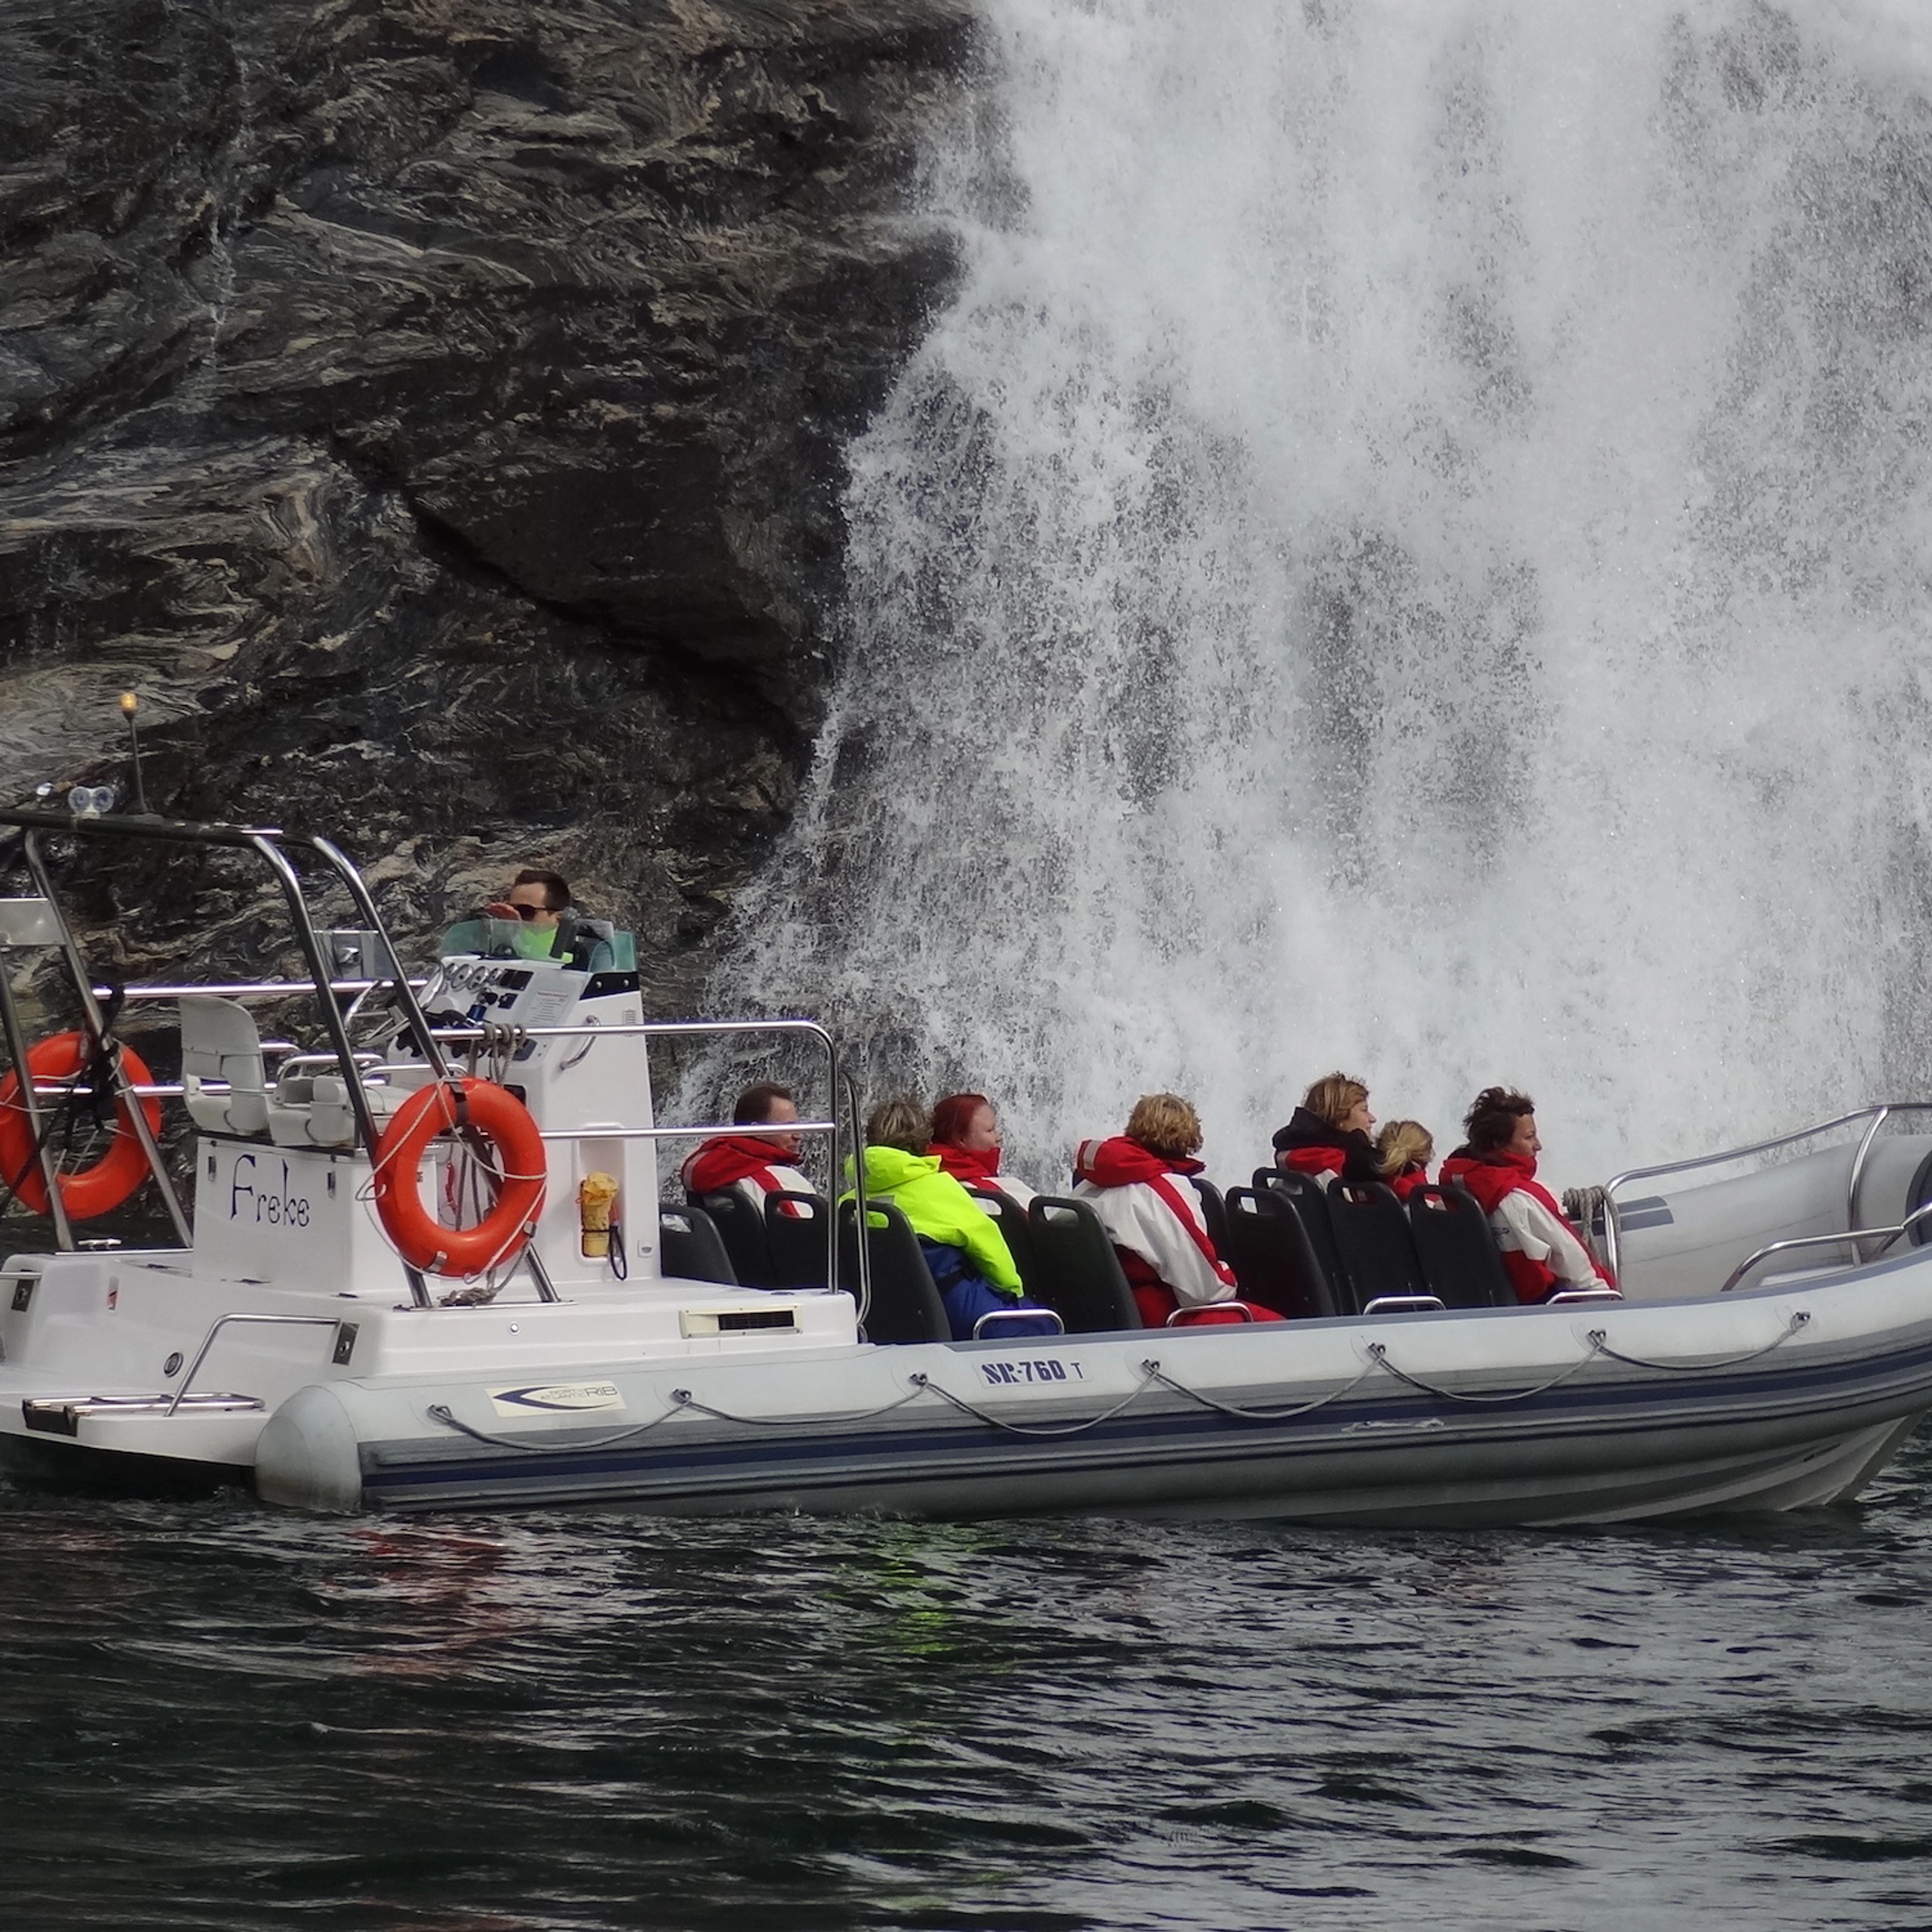 RIB-Abenteuer auf dem Geirangerfjord, Halt an Wasserfällen, Geiranger, Norwegen